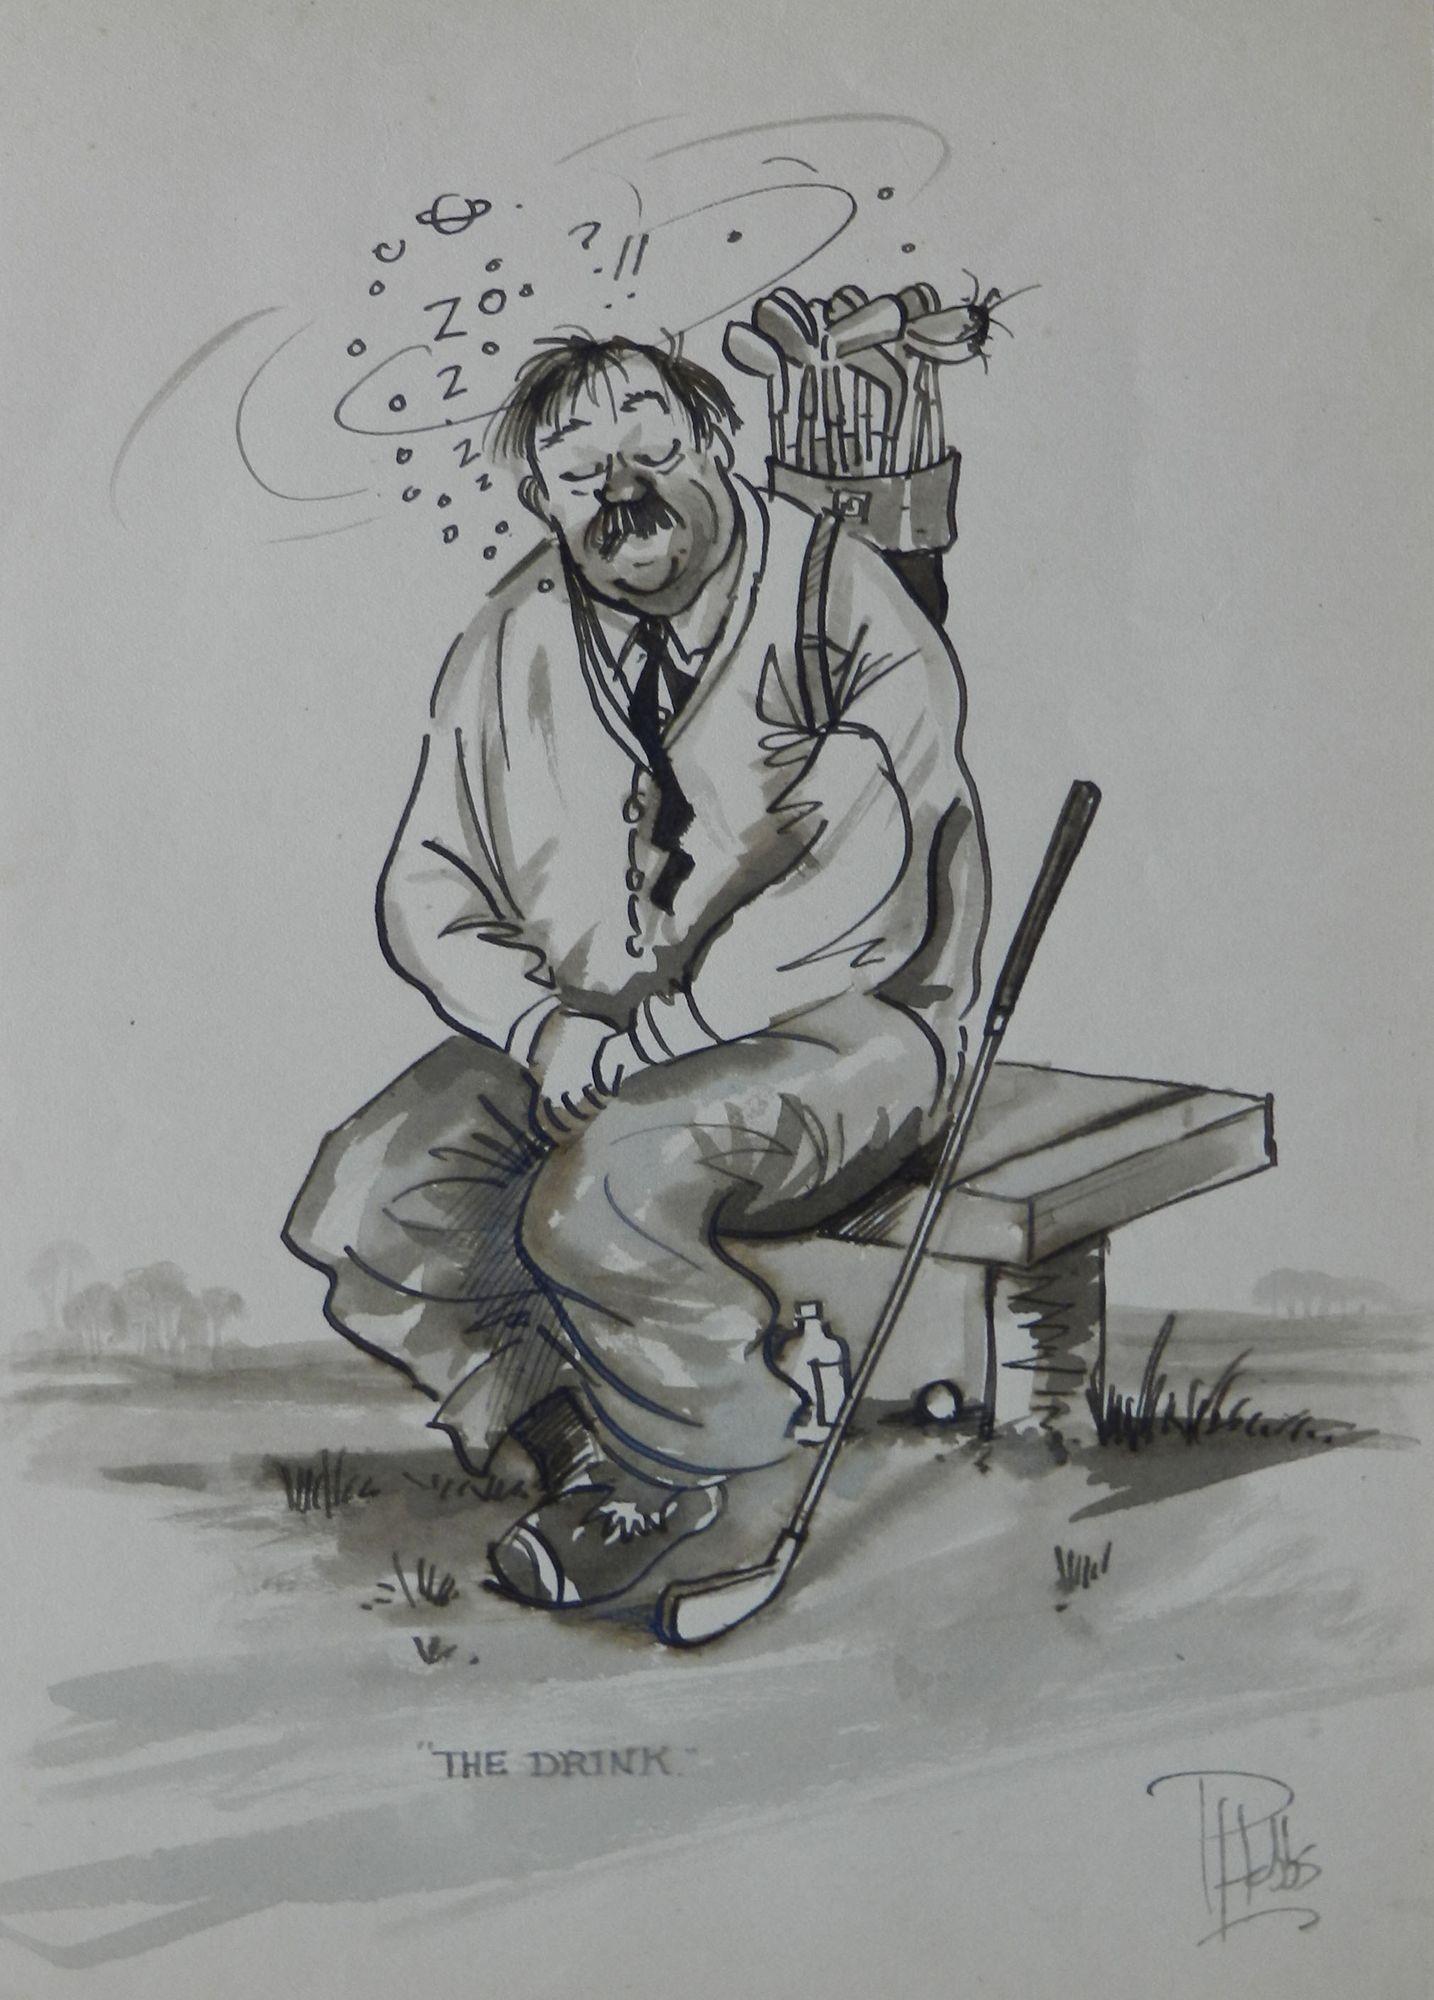 Betrunkener Golfer von Peter Hobbs Golf Originalgemälde Karikatur um 1950
Amüsante Original-Skizze Karikatur eines Golfers
Das Getränk
Fertig zum Einrahmen
Aus einer Serie von Golfkarikaturen des britischen Künstlers Peter Hobbs, 1930-1994.
Peter